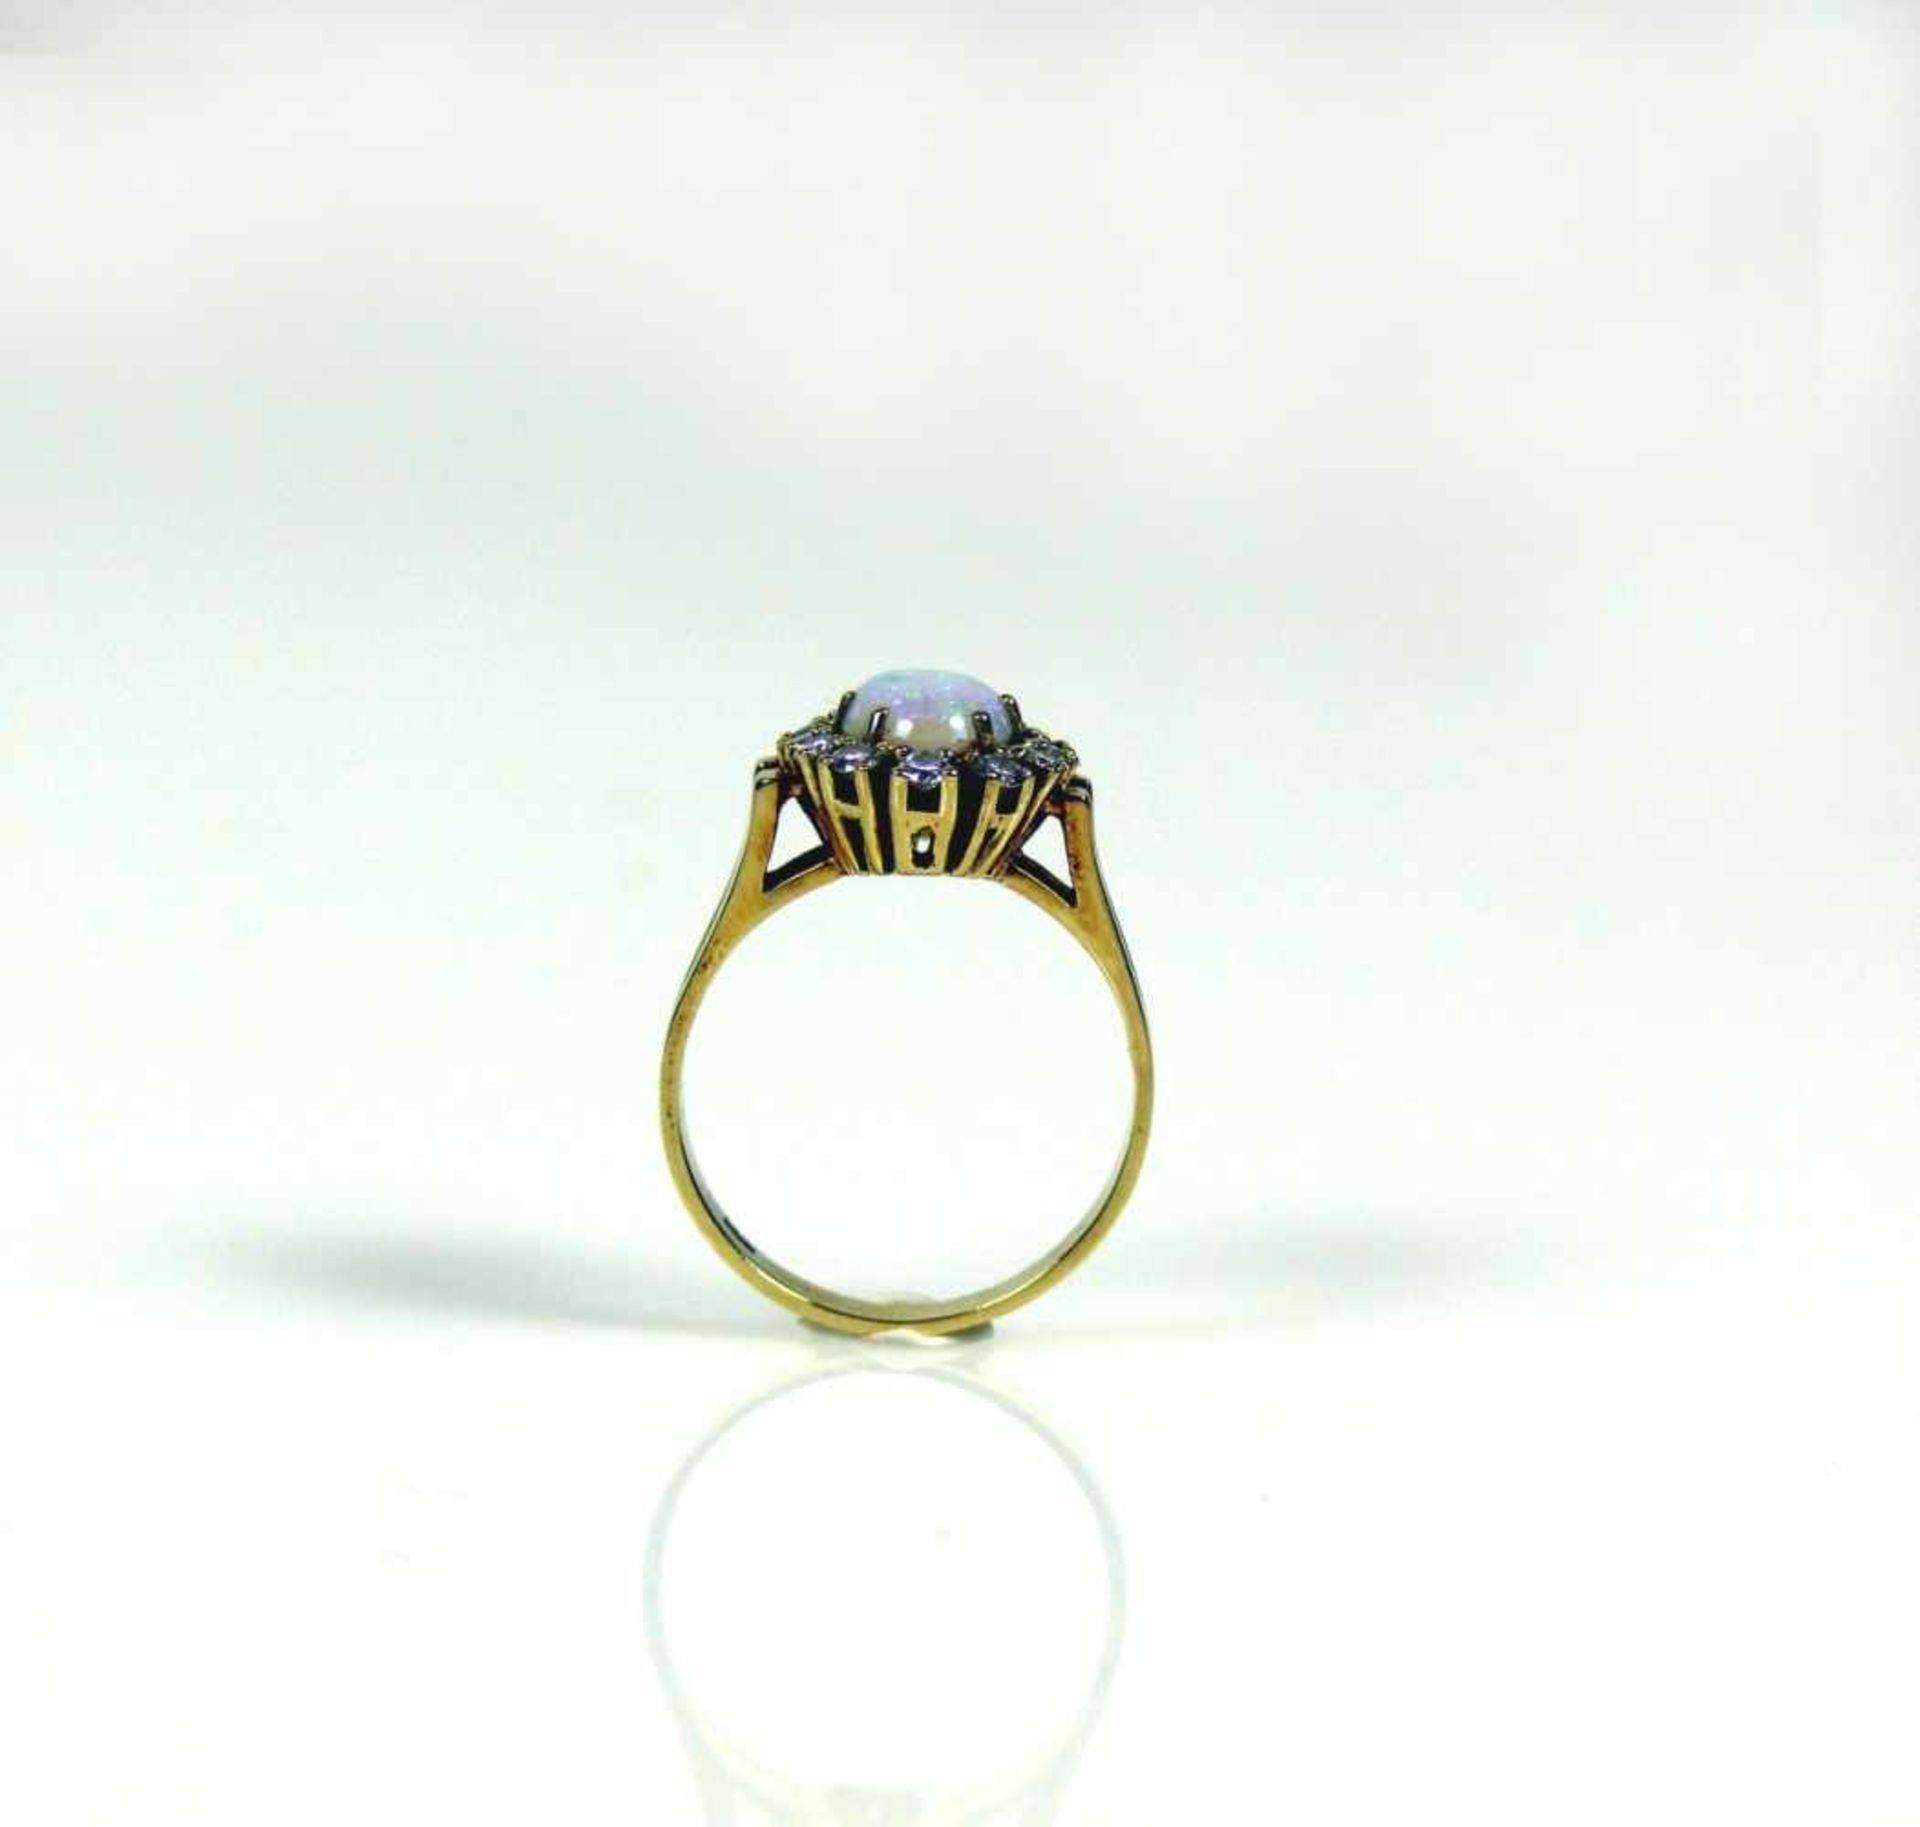 Damenring14ct GG; besetzt mit ovalförmigem Opal-Cabochon; umrahmt von 12 kleinen Brillanten zus. ca. - Bild 3 aus 3